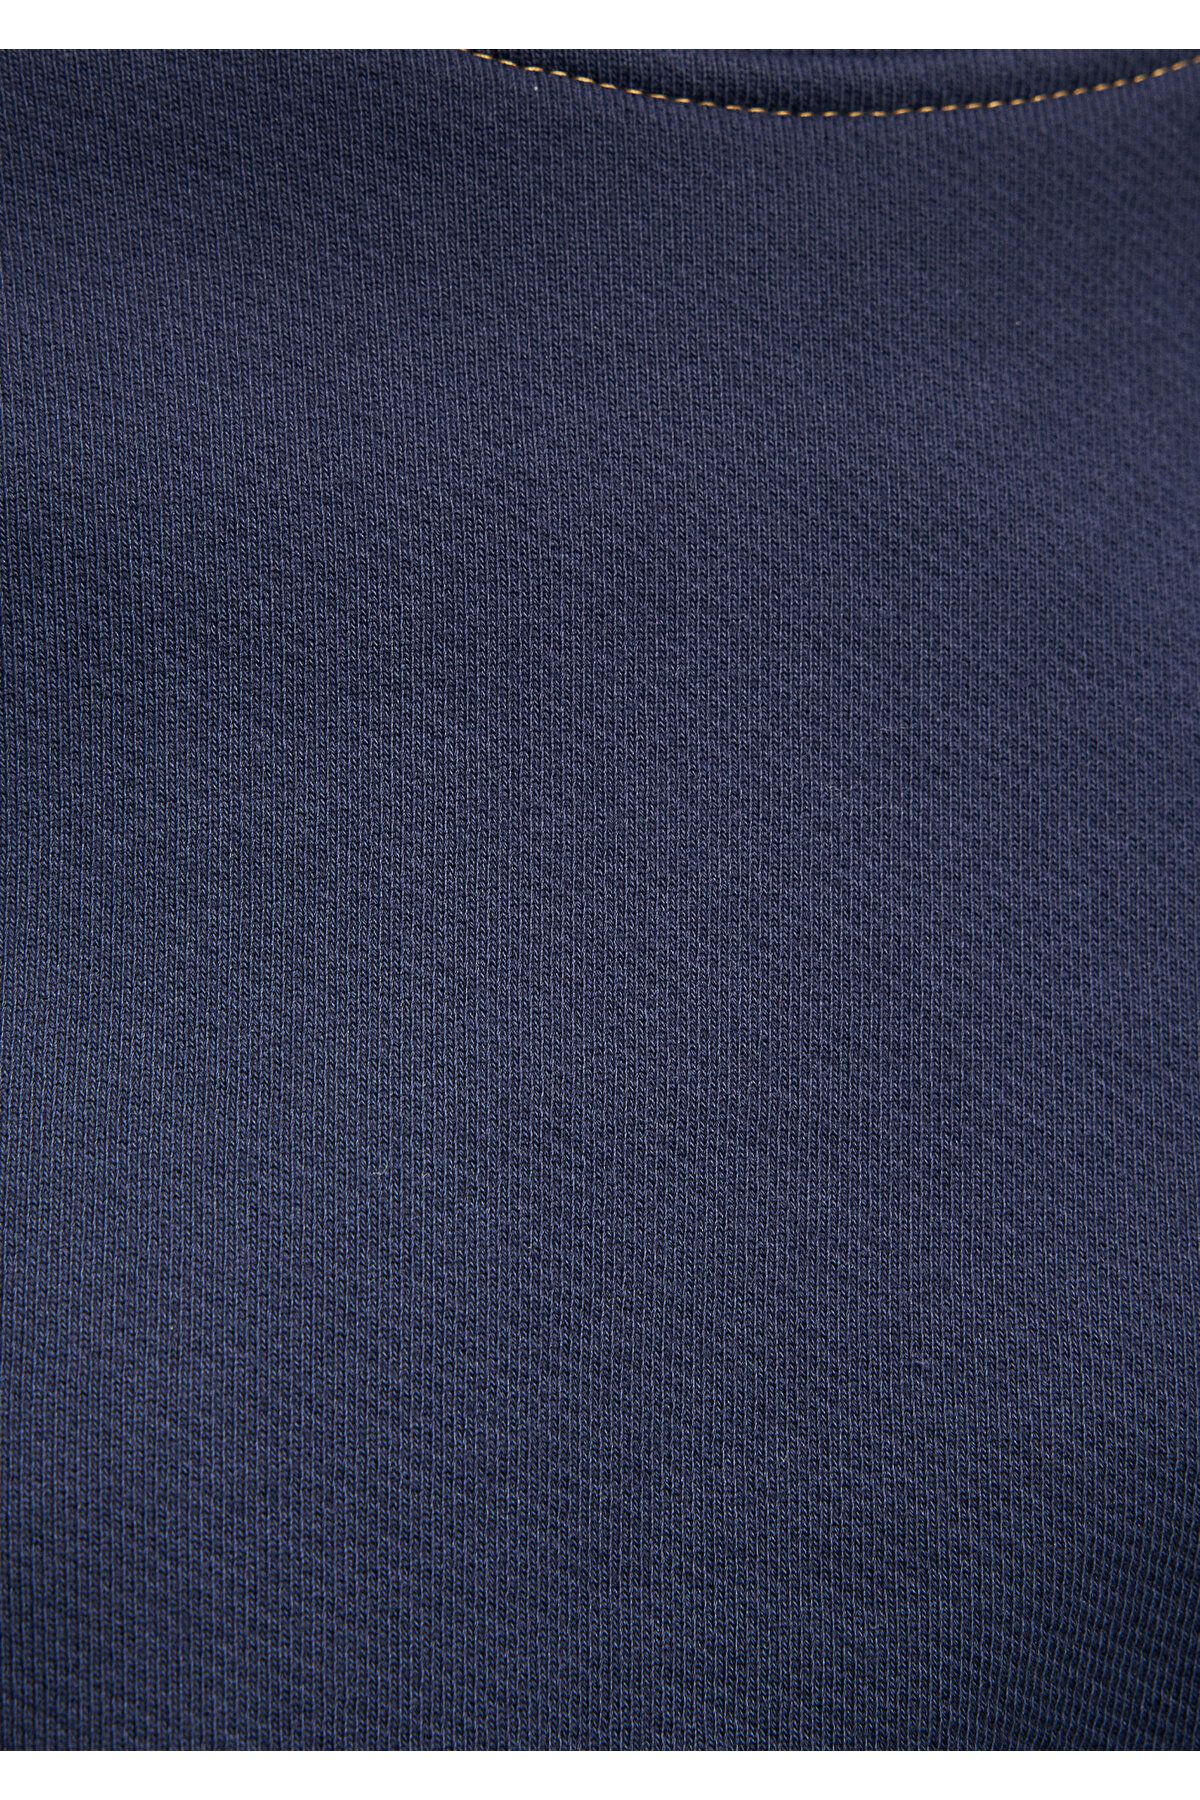 Mavi Navy Blop Crop Sweatshirt 1S10070-82458